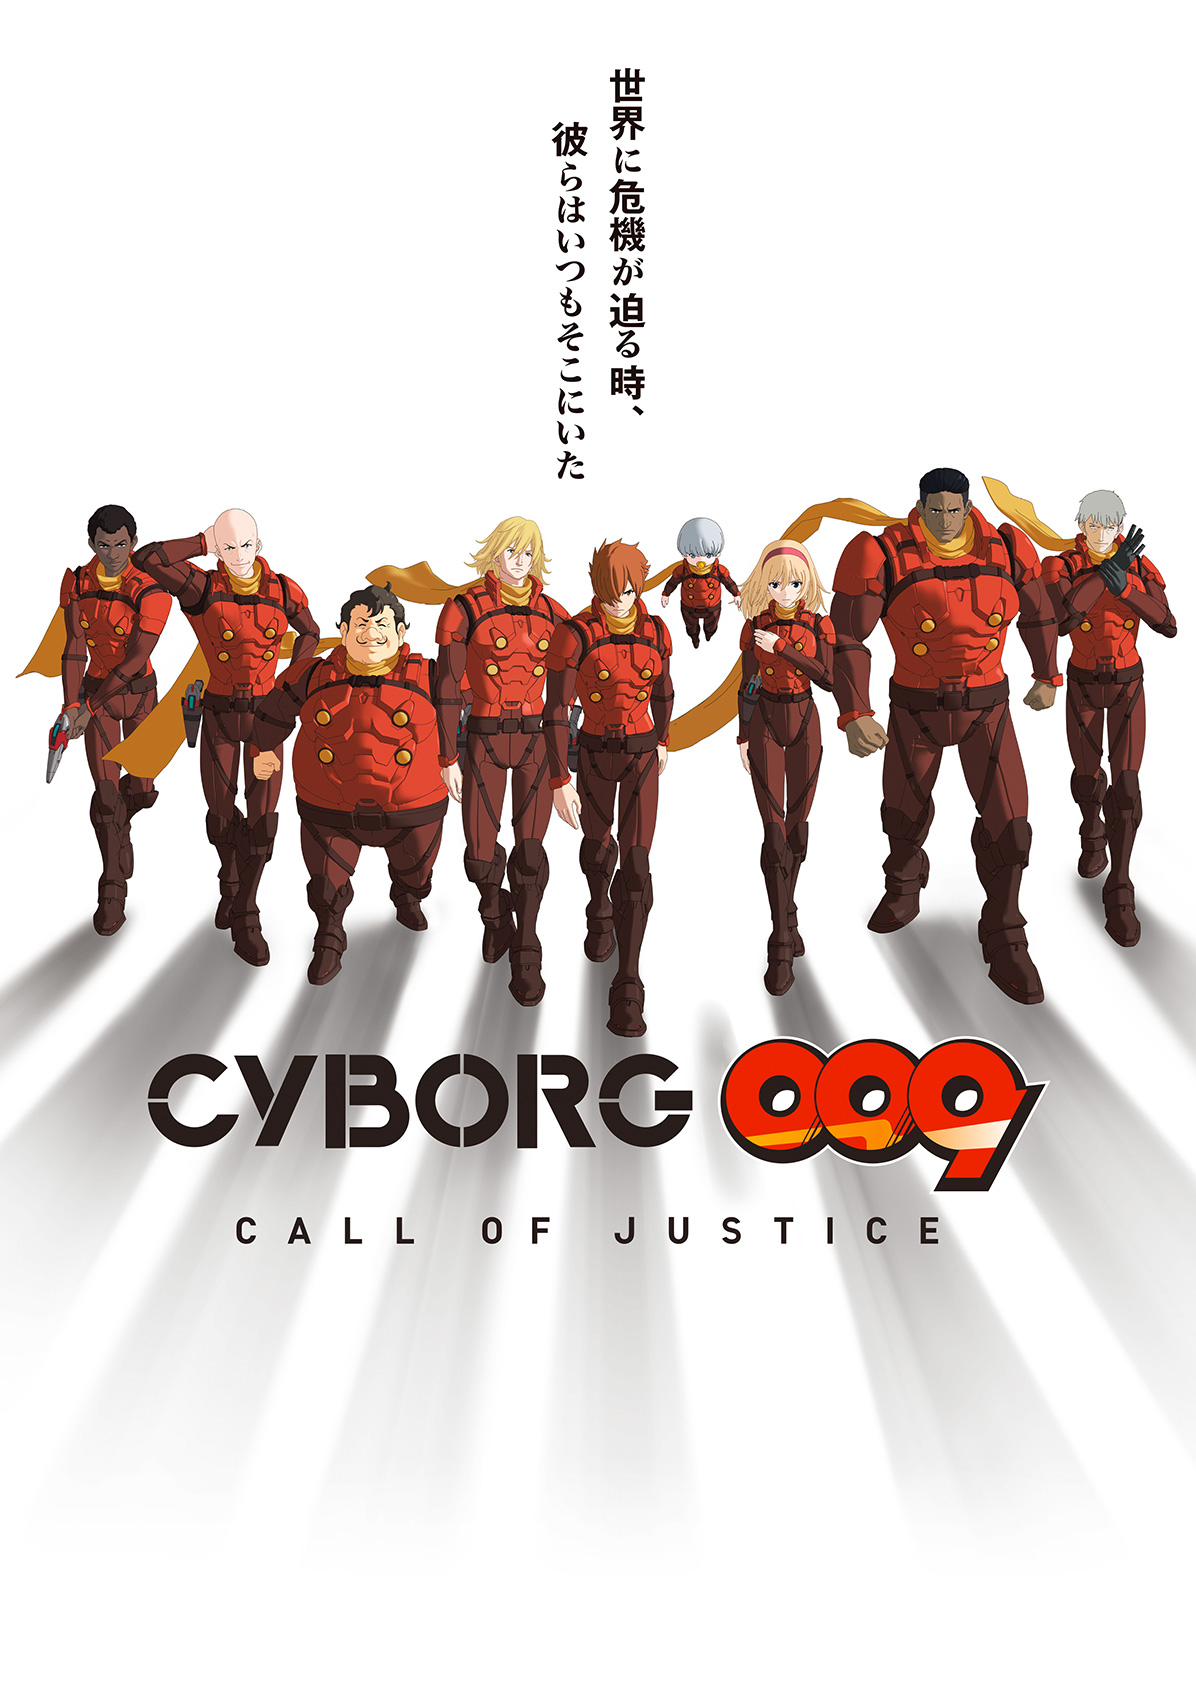 Cyborg 009: Call of Justice | Cyborg 009 Wiki | Fandom